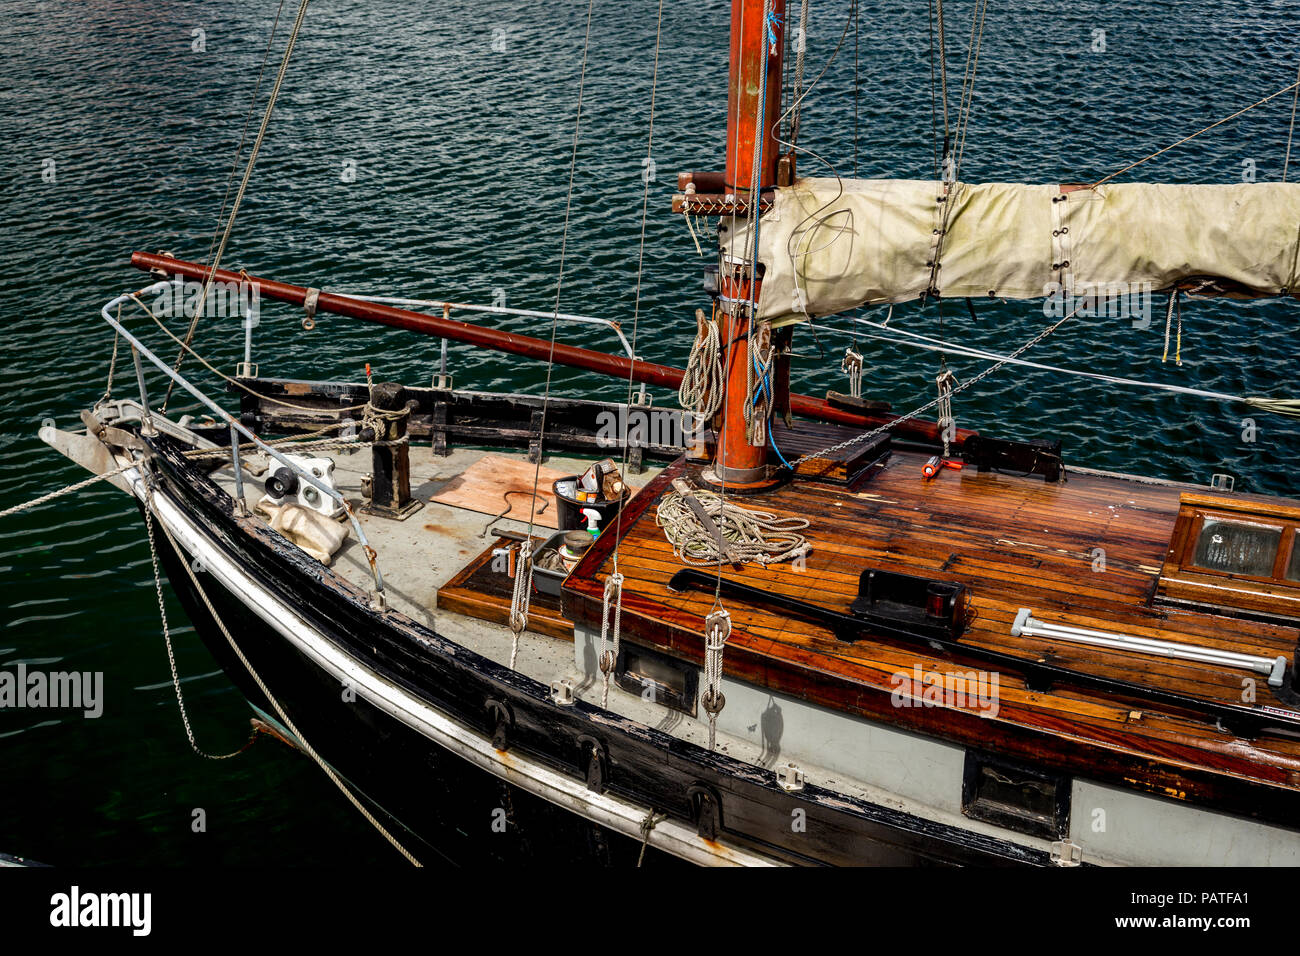 Dettagli del vecchio yacht in legno, isole Orcadi, Scozia Foto Stock